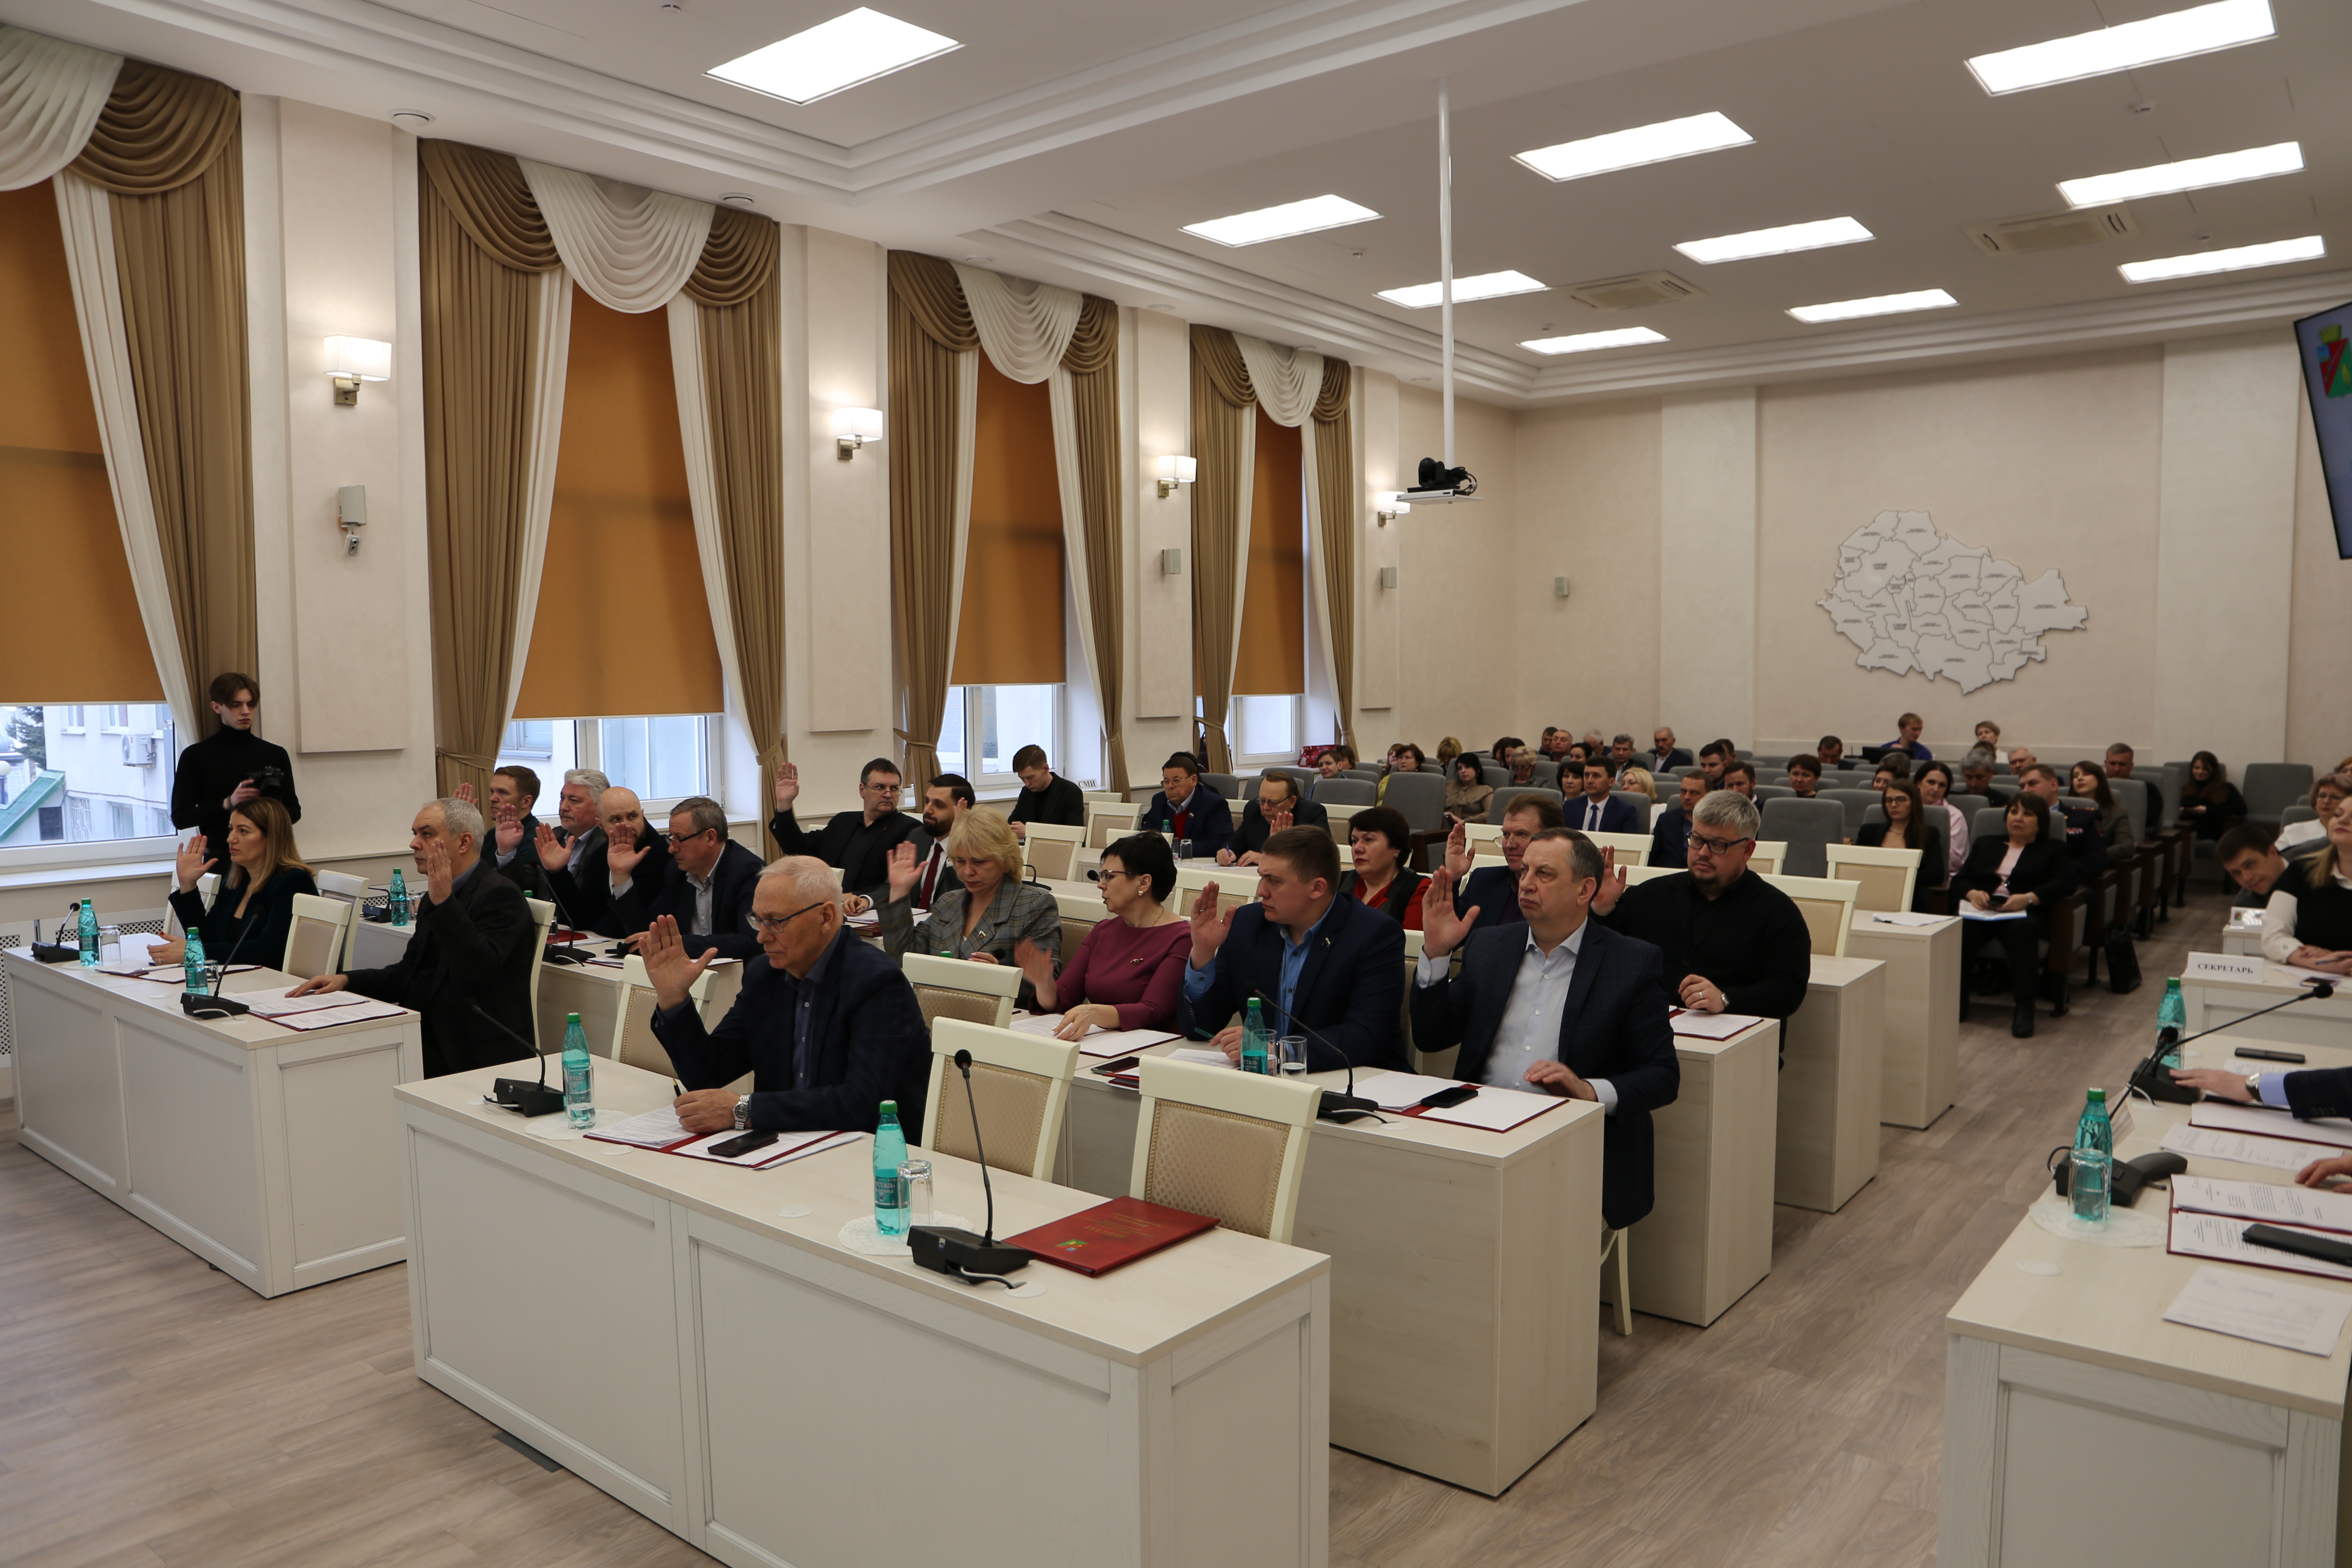 Состоялось девятое заседания Совета депутатов Старооскольского городского округа четвертого созыва